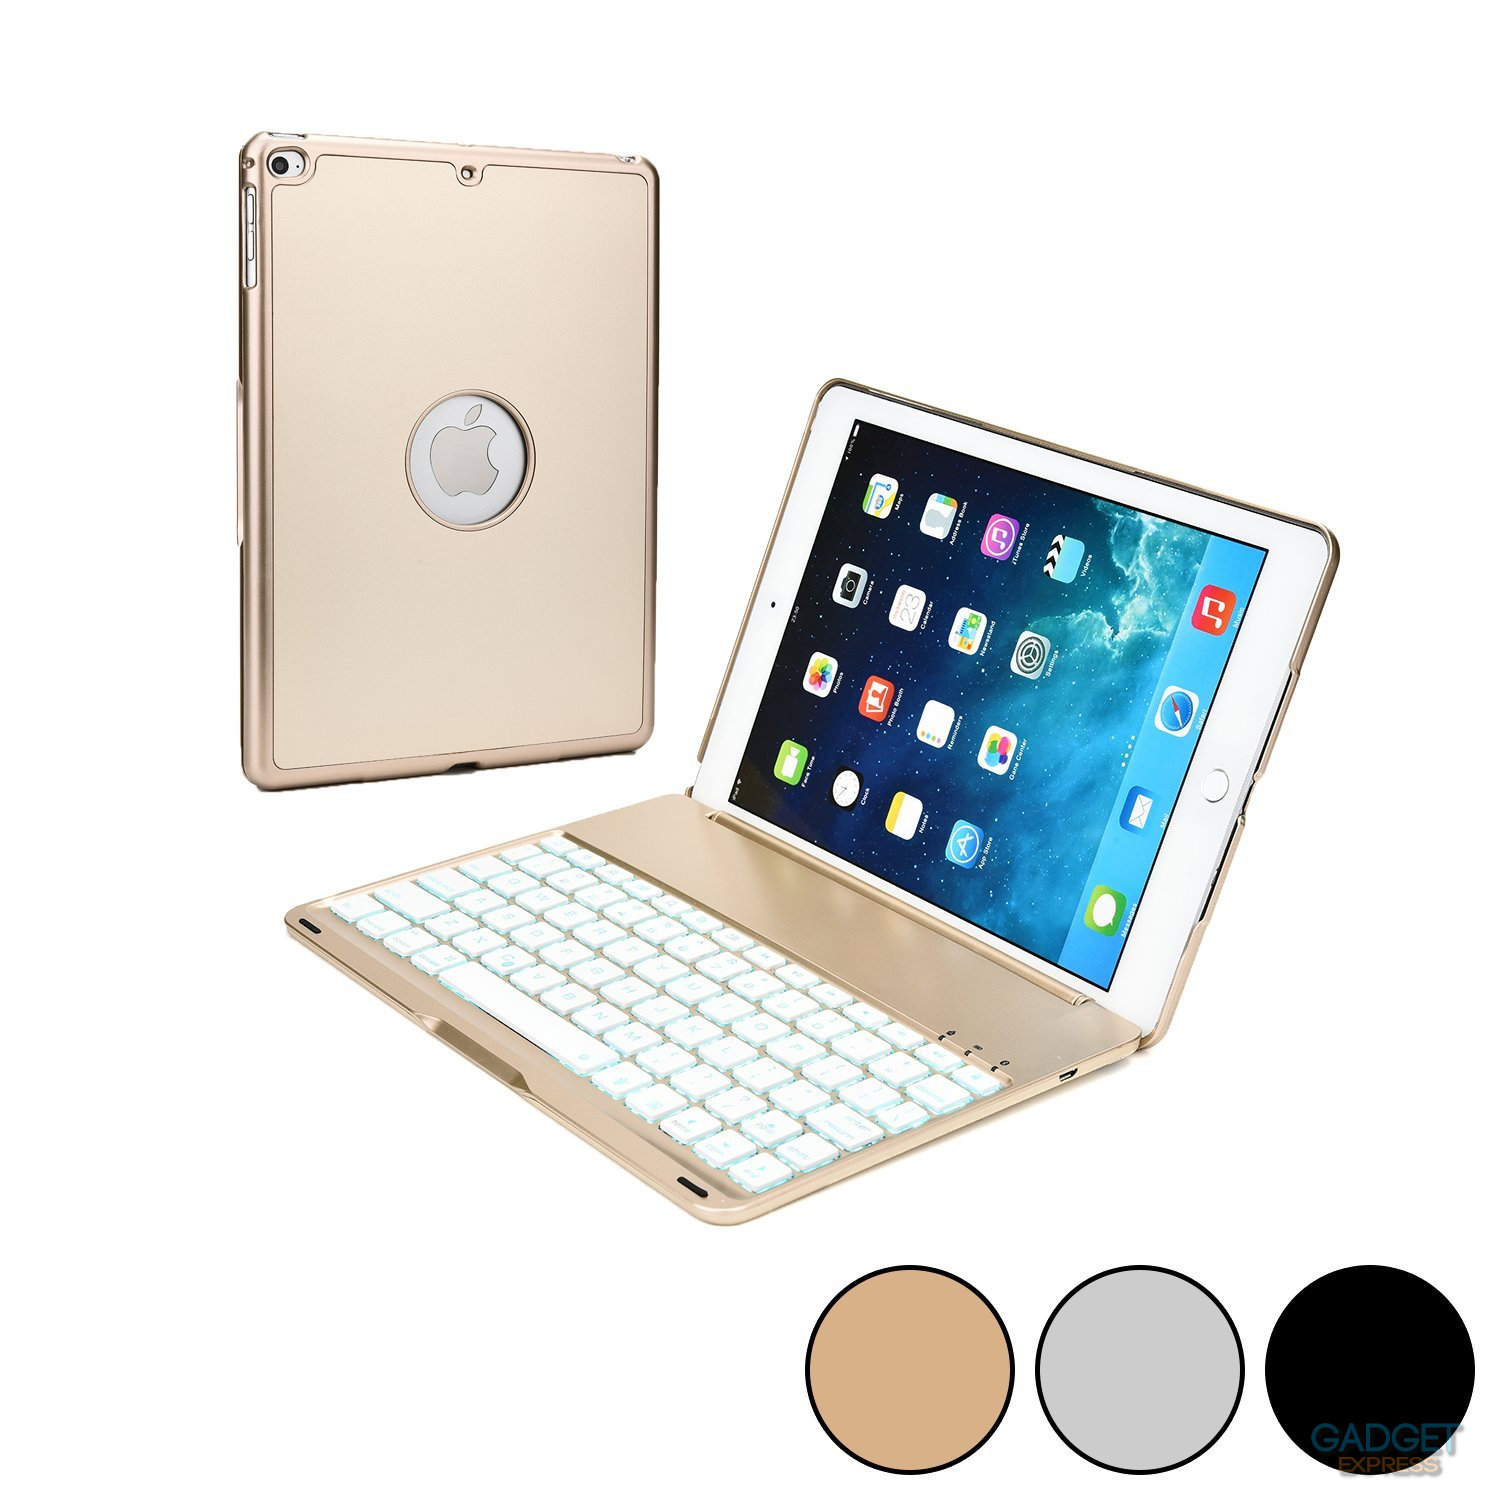 Bàn phím Bluetooth F8S cho iPad Mini 123 - 7 màu đèn cho bàn phím